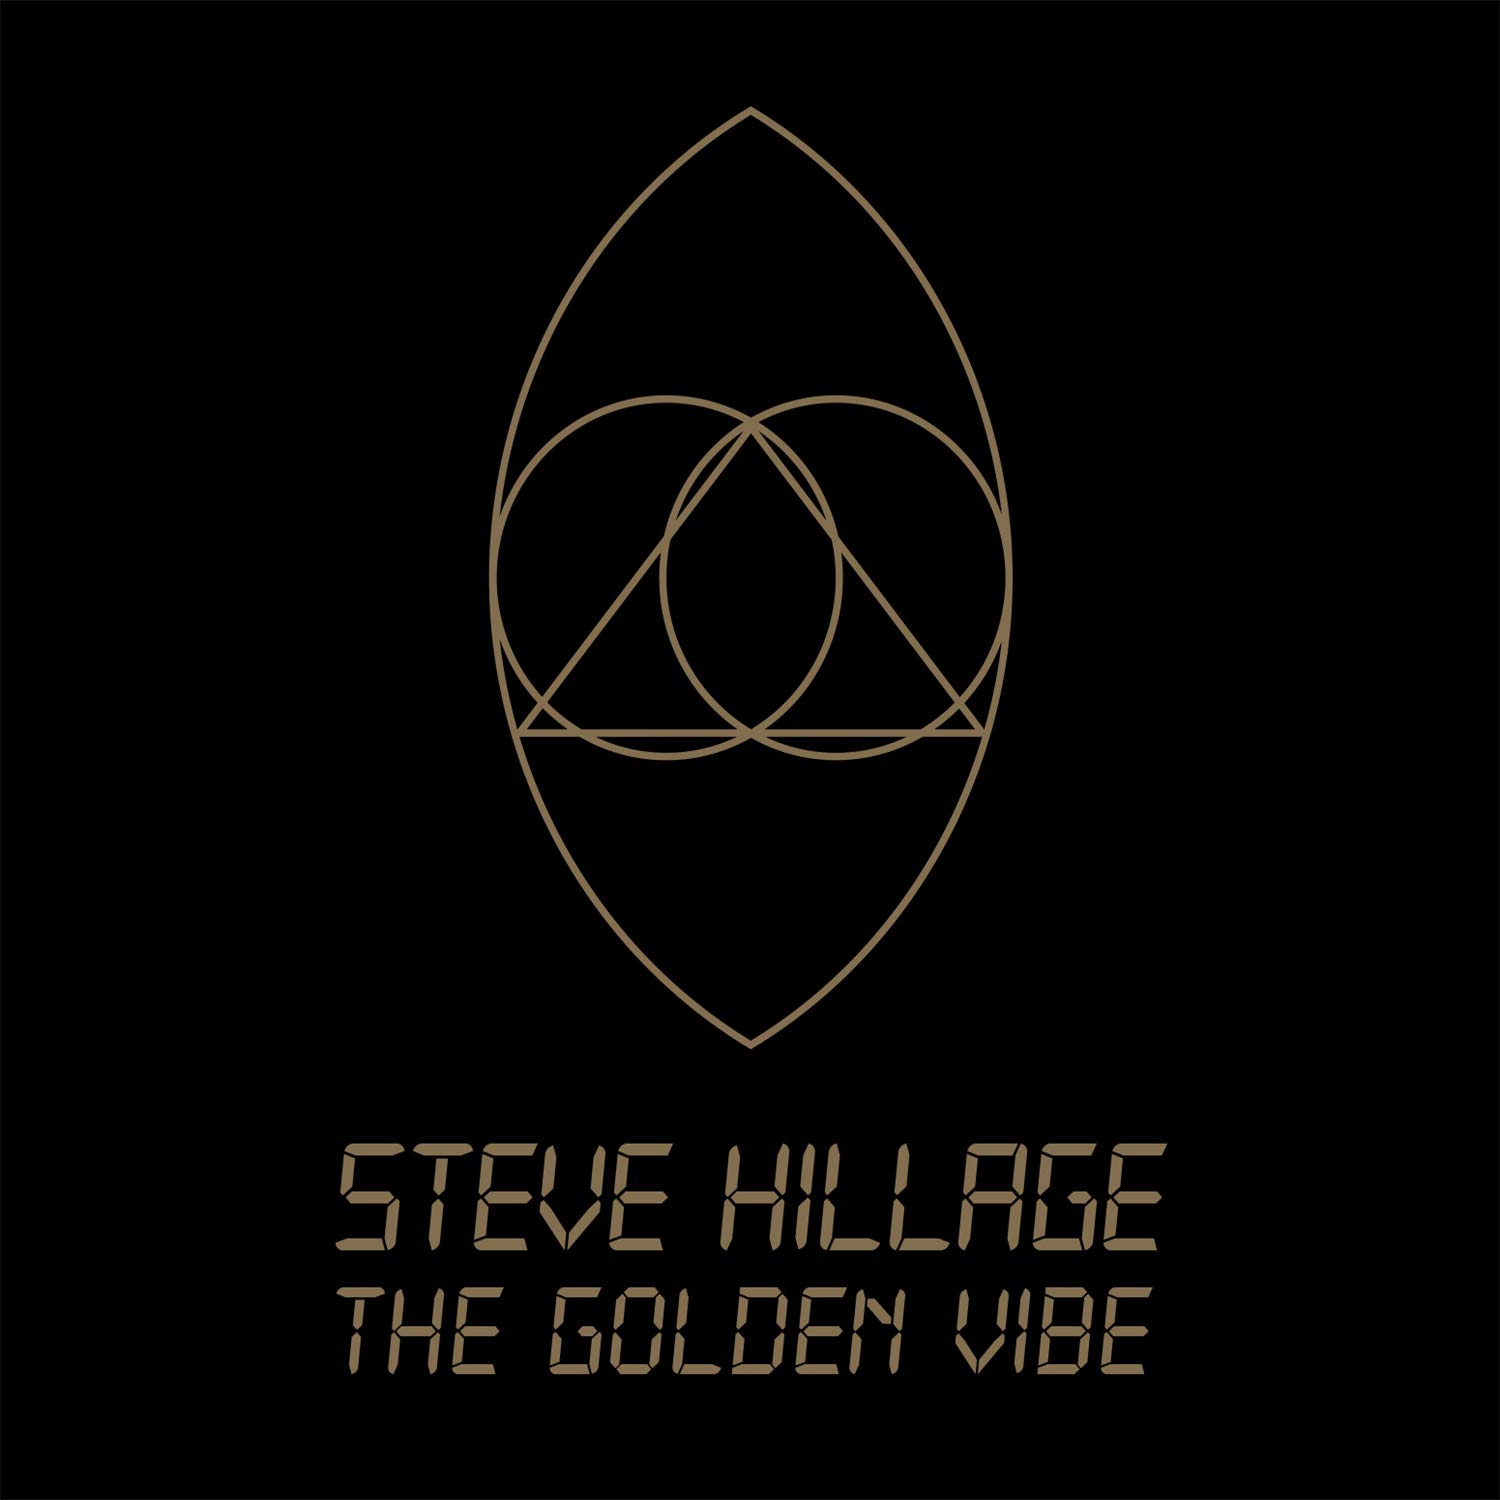 Vinile Steve Hillage - The Golden Vibe (2 Lp) NUOVO SIGILLATO, EDIZIONE DEL 06/06/2019 SUBITO DISPONIBILE